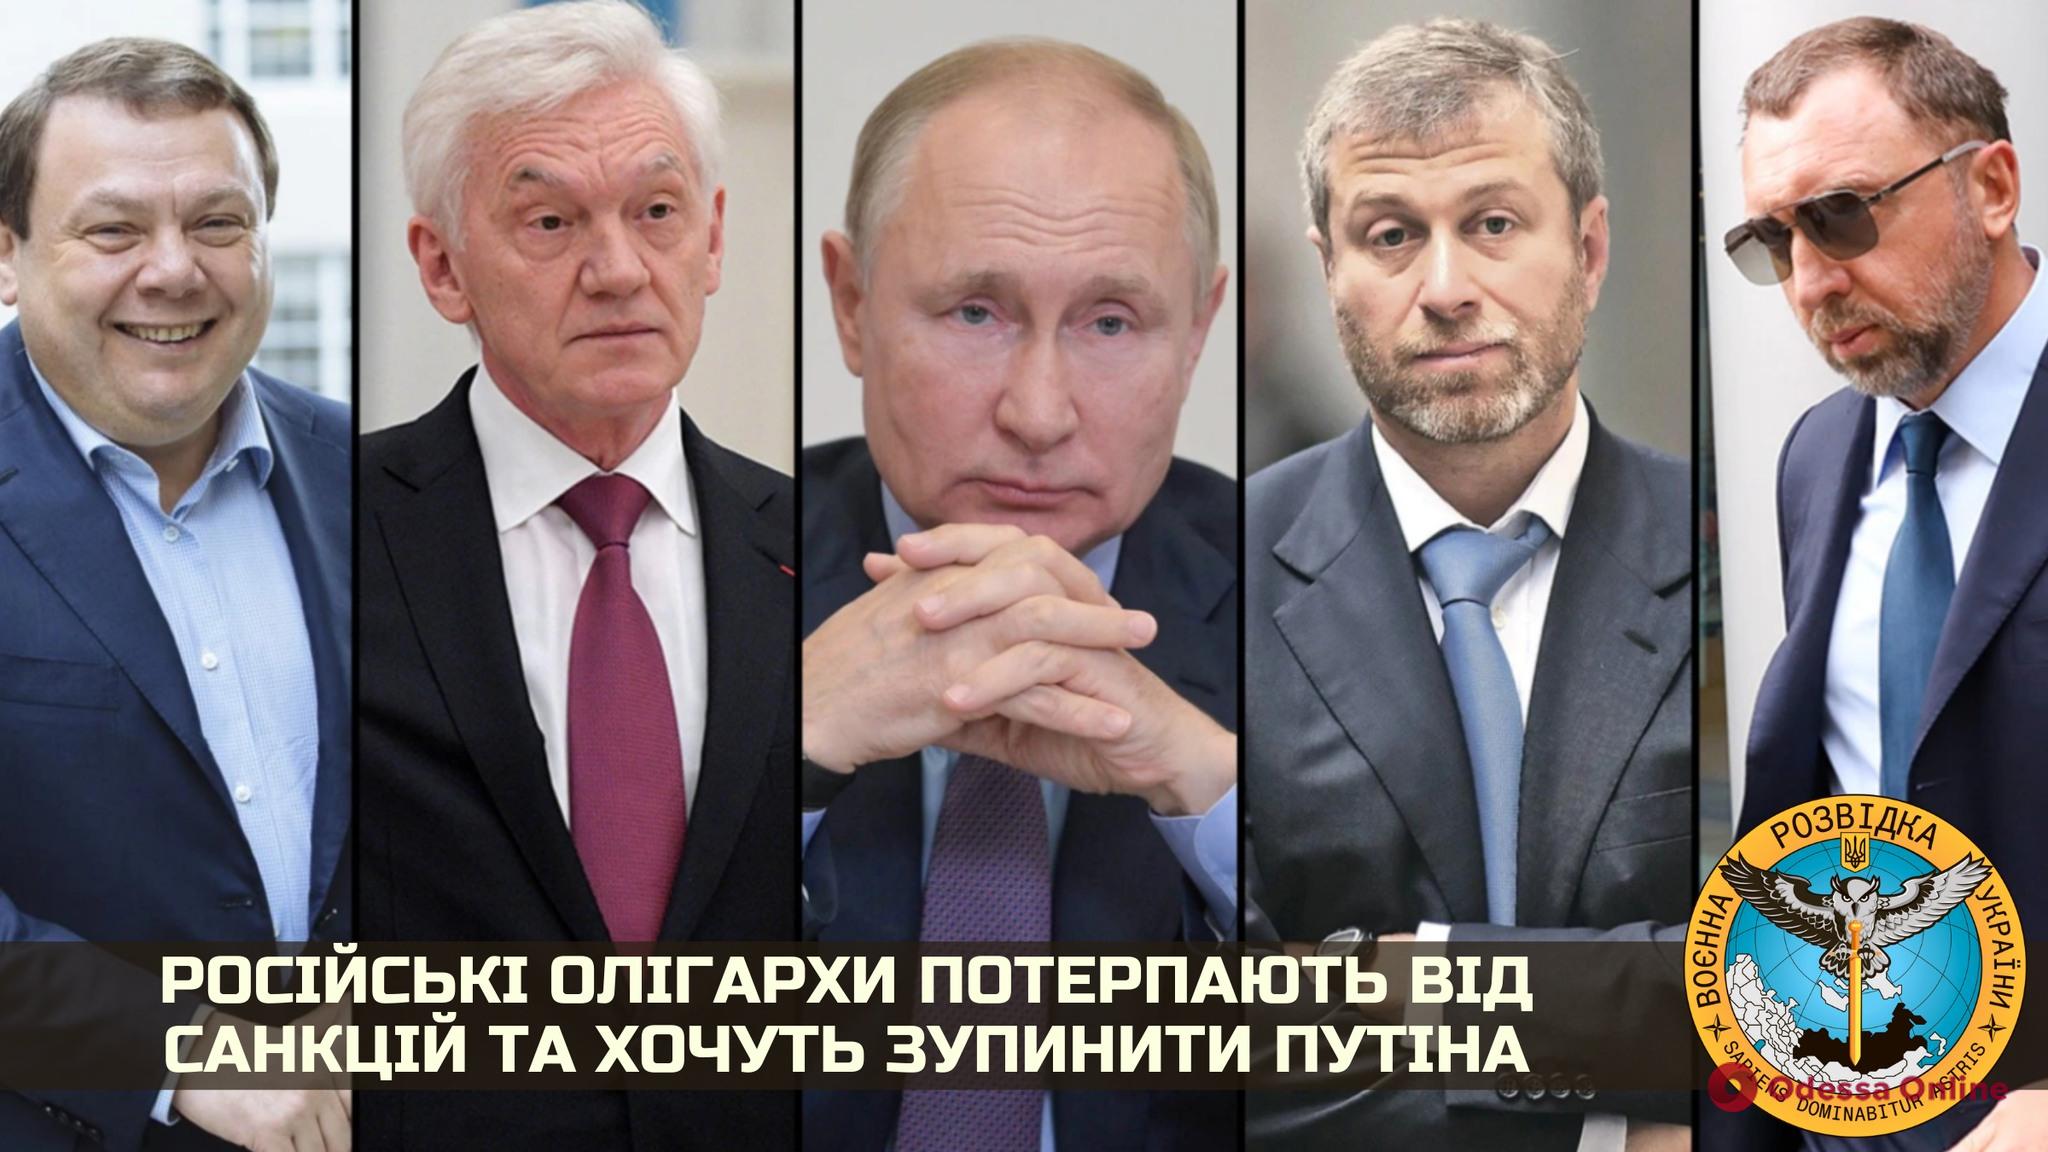 Российские олигархи страдают от санкций и хотят остановить путина